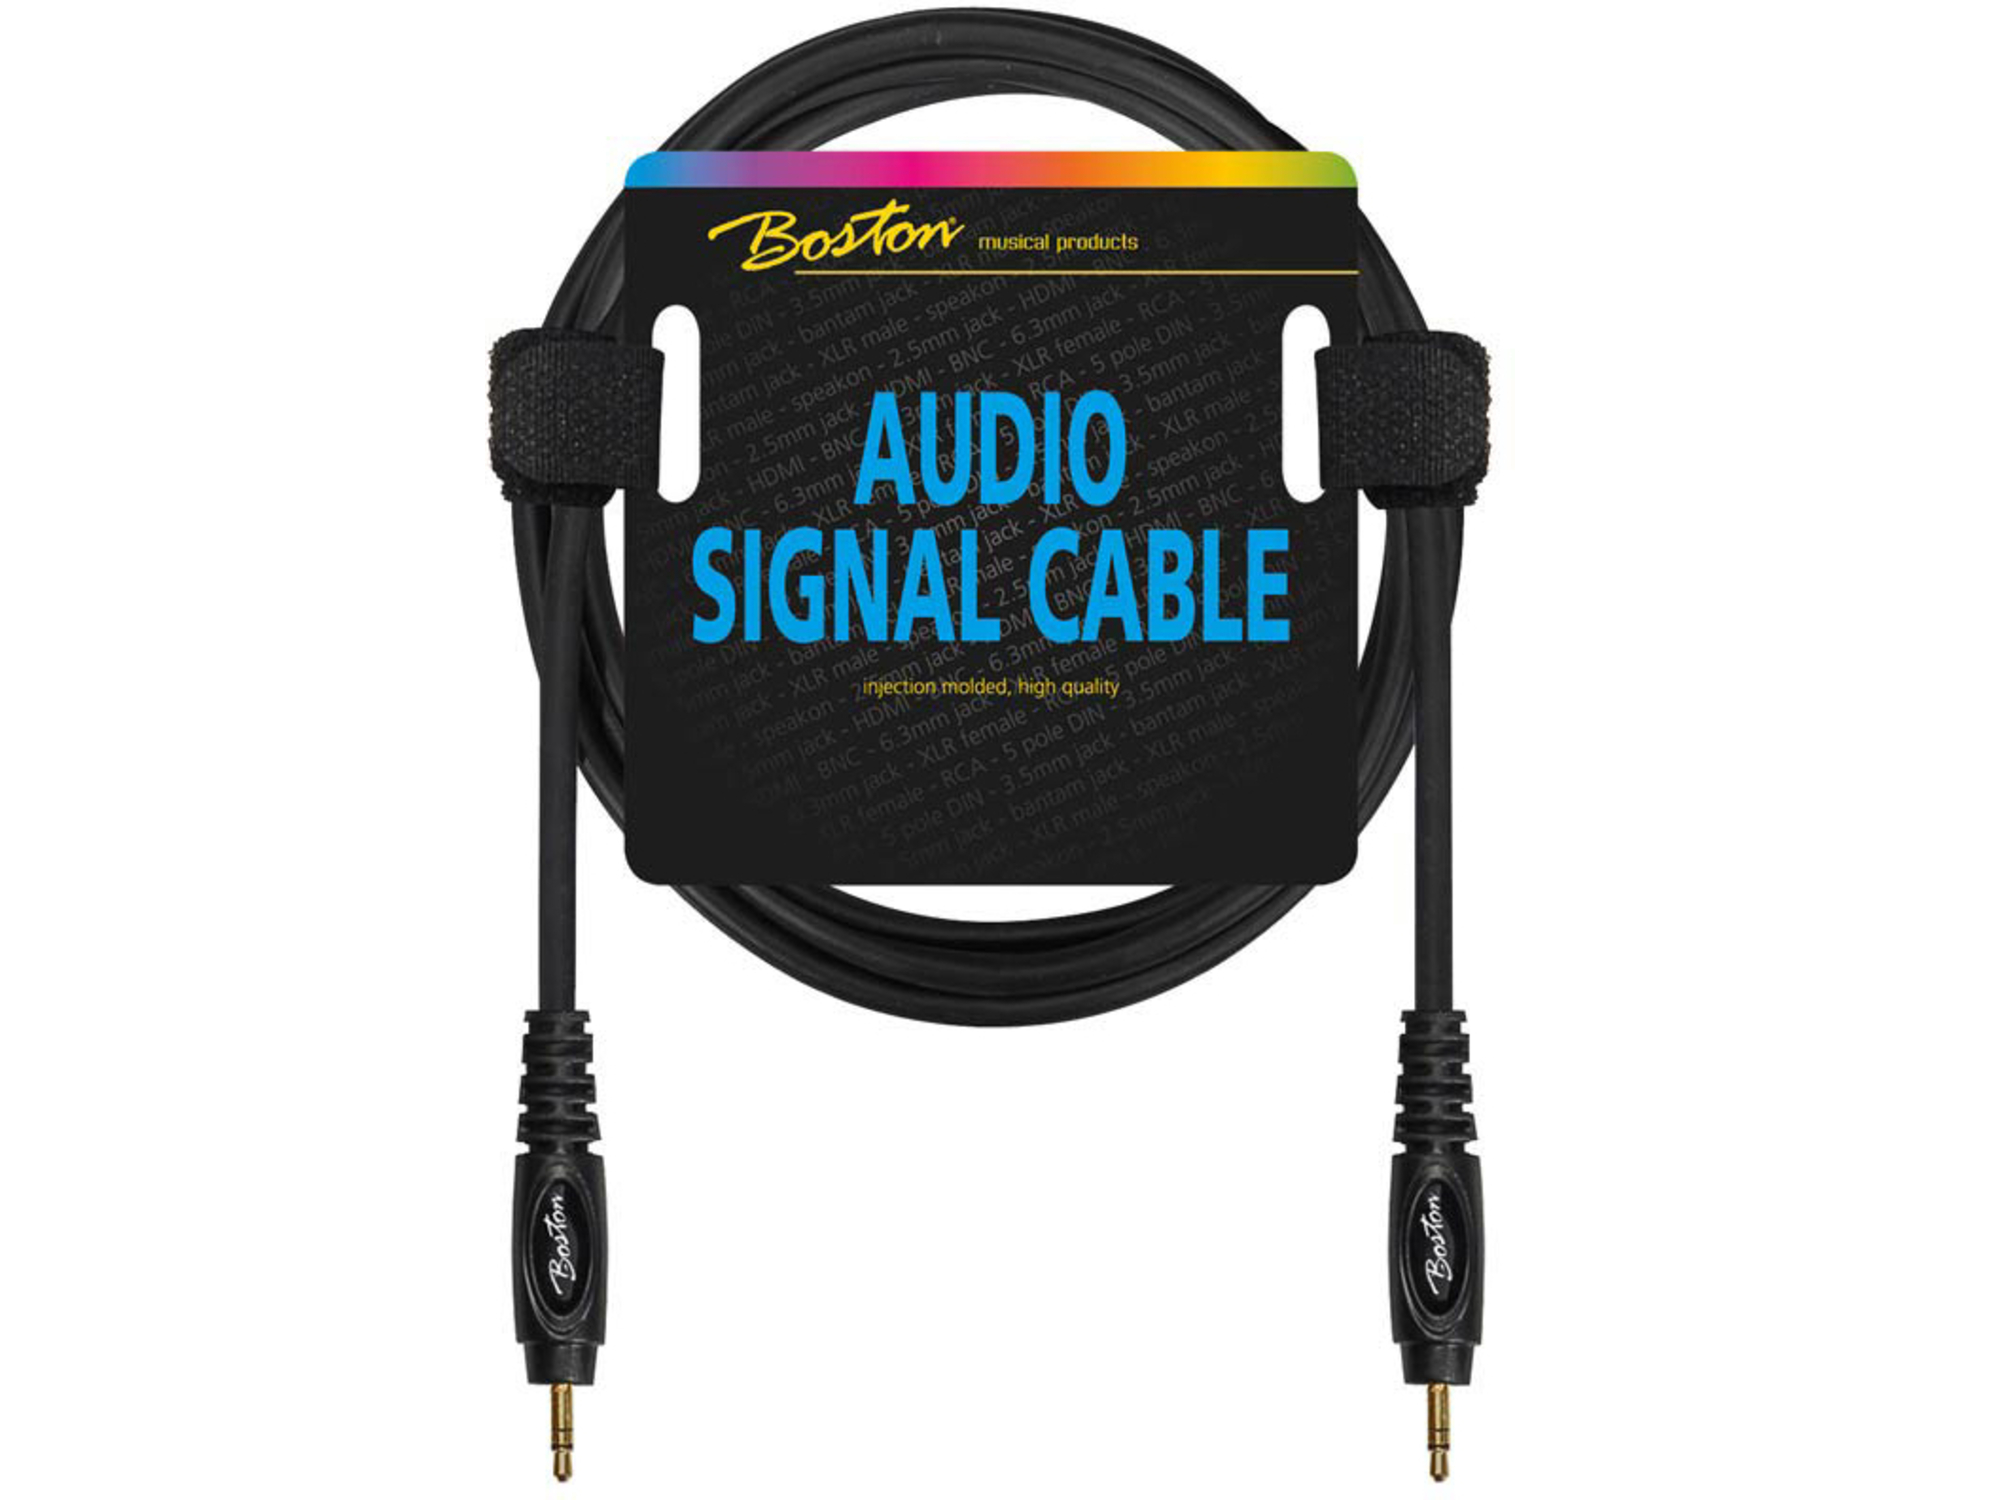 Boston Audio kabel AC-266-150